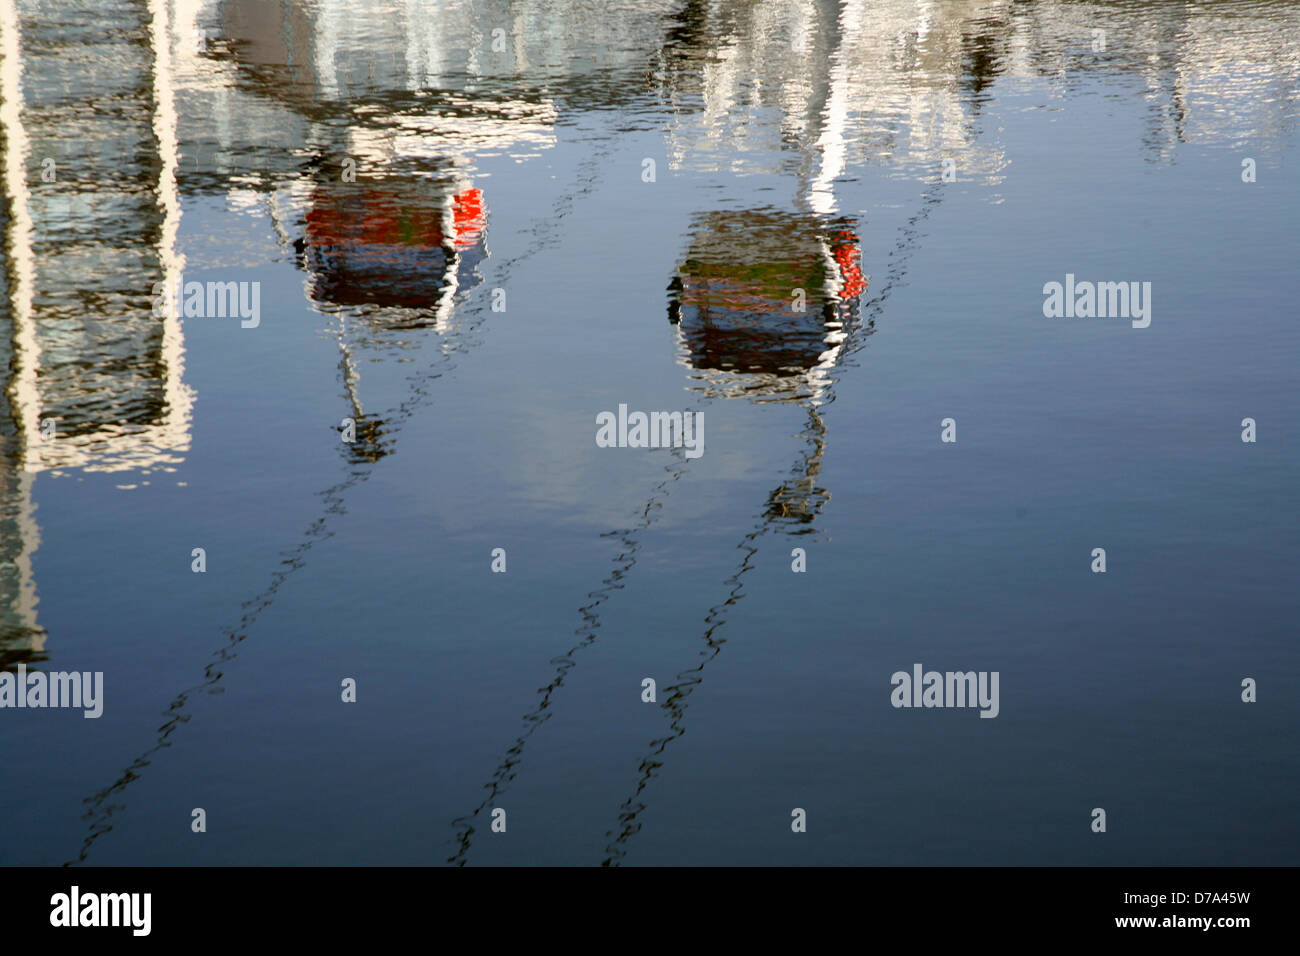 Funivie dalla compagnia aerea Emirates riflessi nell'acqua di Royal Victoria Dock, Canning Town, Londra, Regno Unito Foto Stock